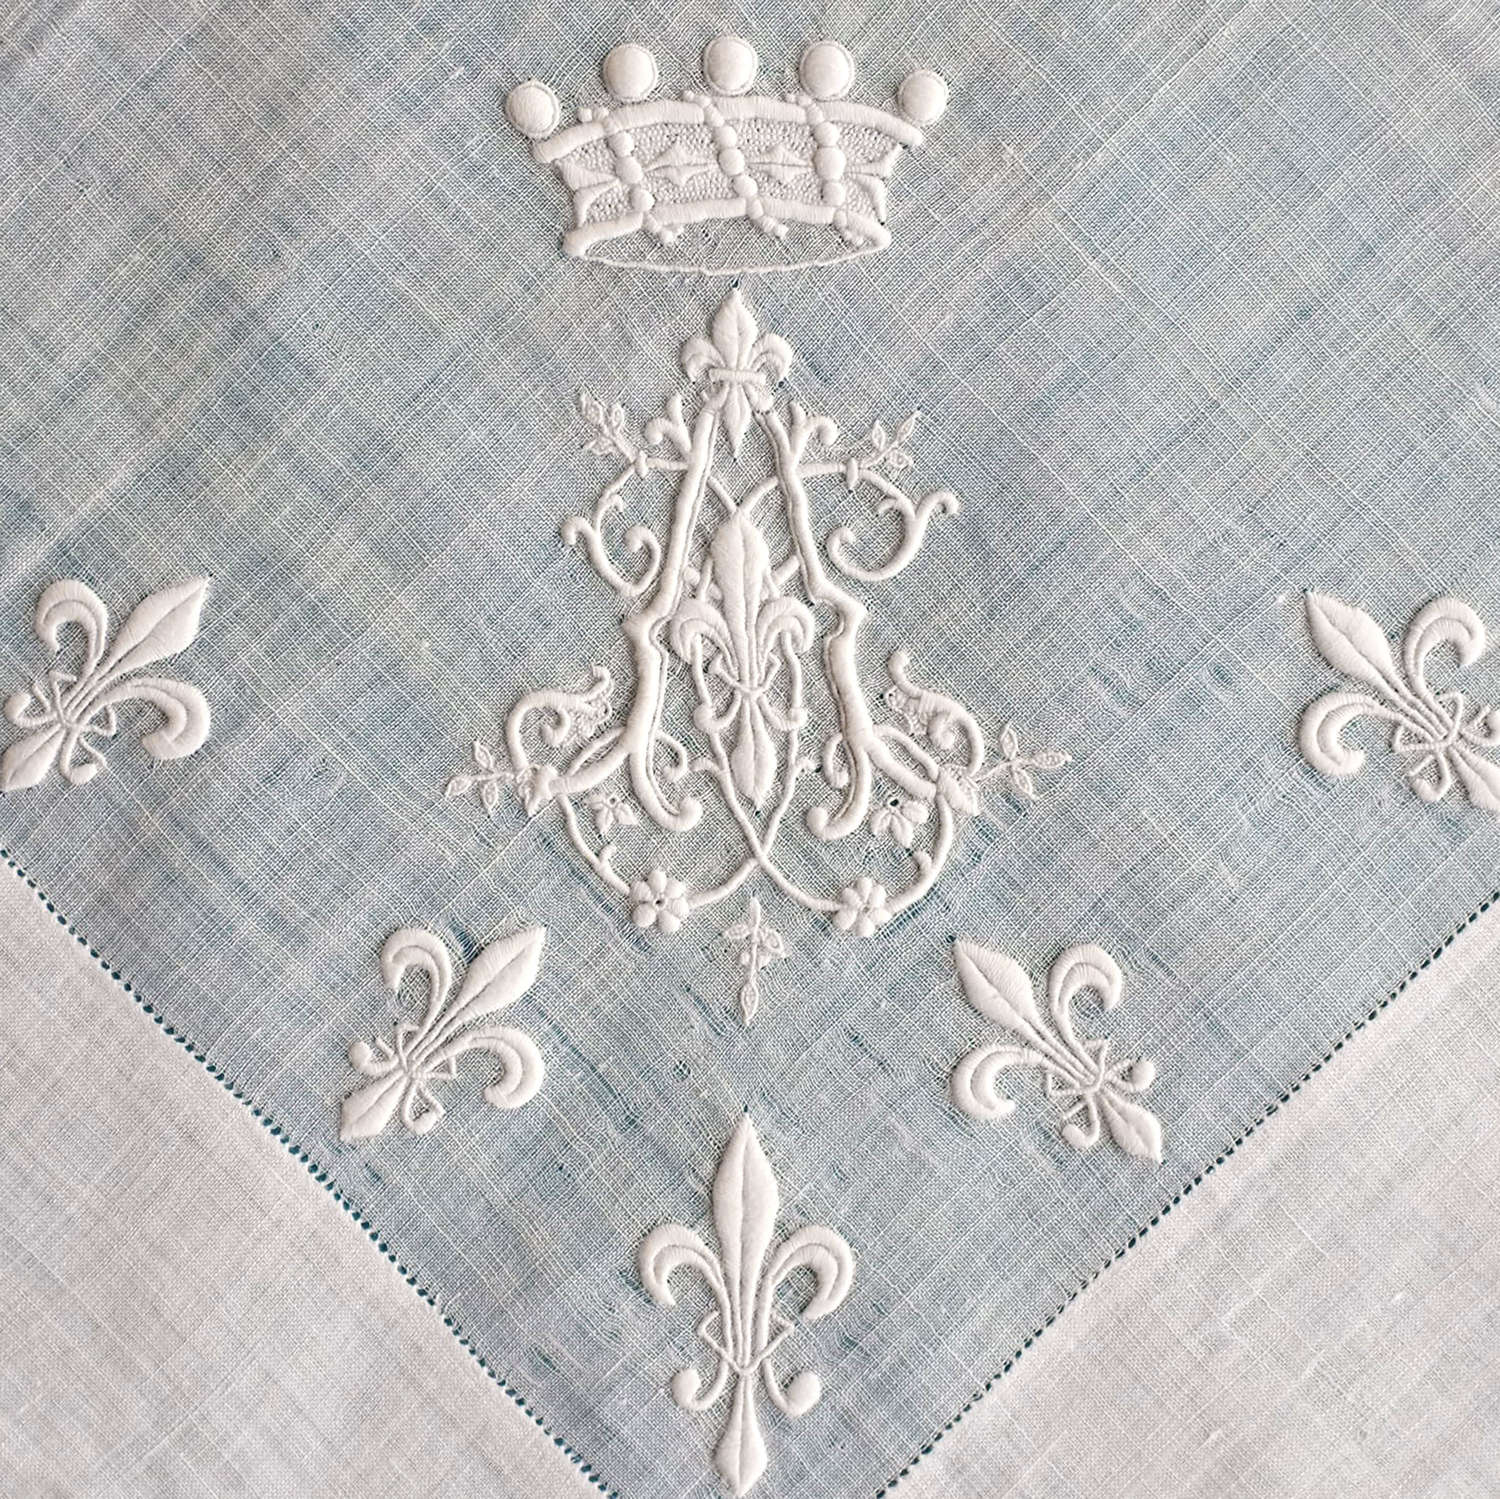 Antique Whitework Handkerchief With Fleur de Lys